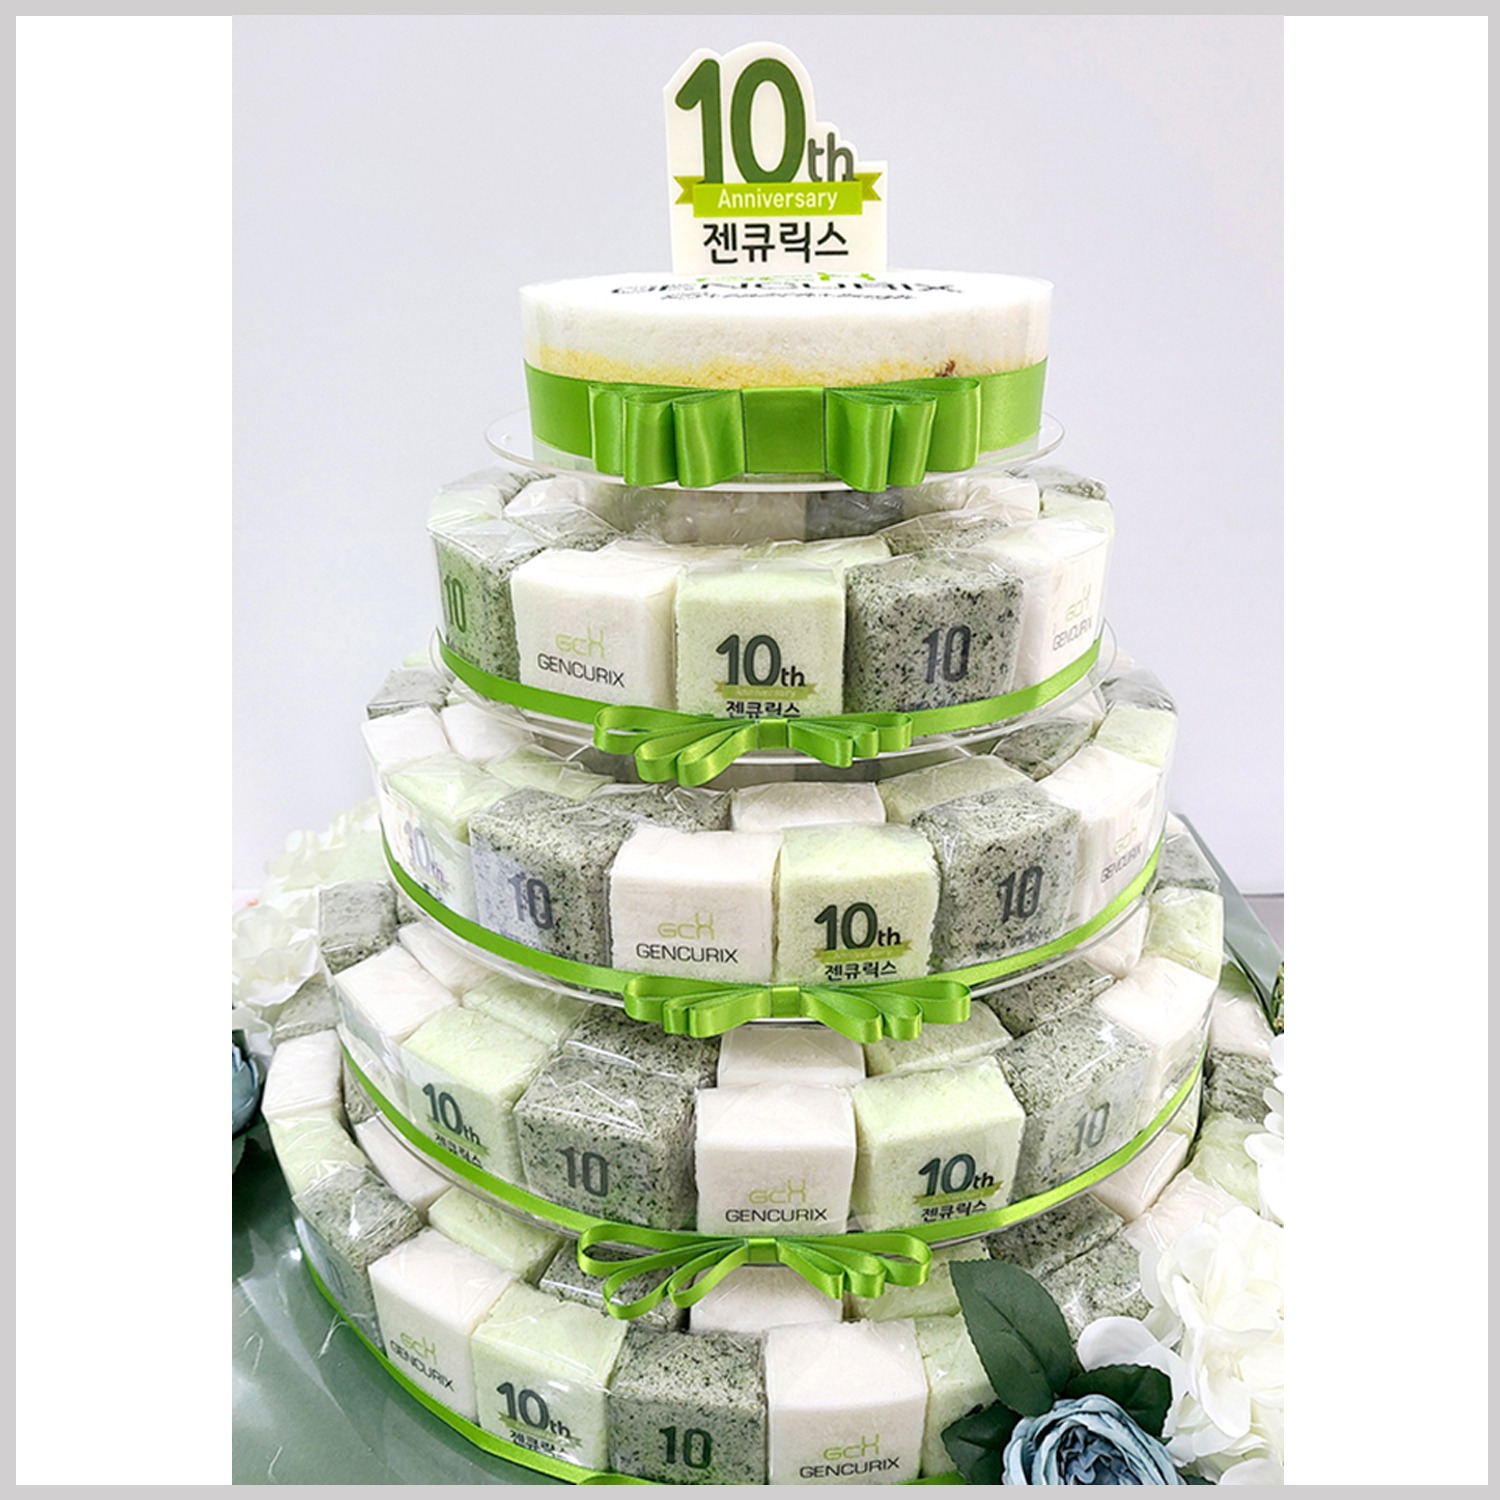 젠큐릭스 창립 10주년 기념 5단 케이크